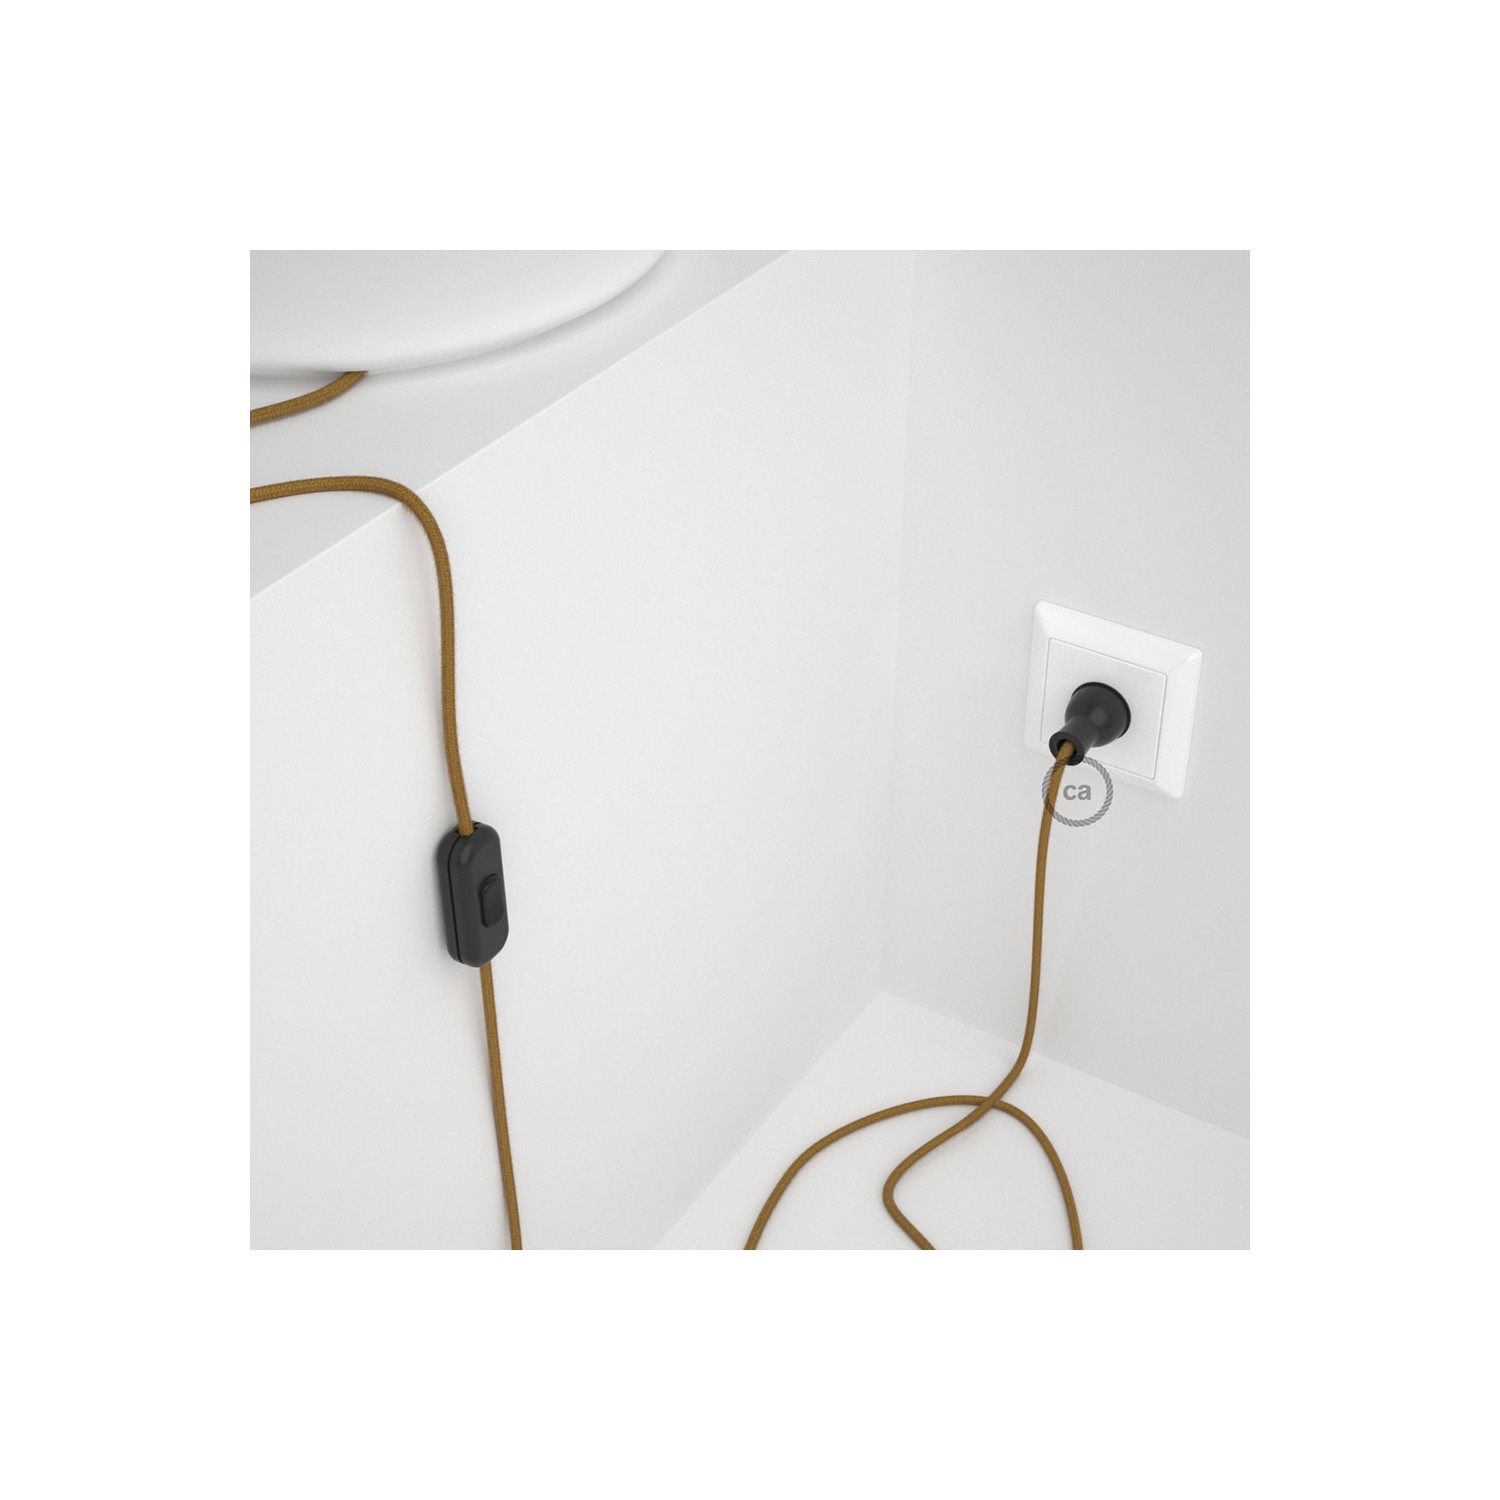 Cableado para lámpara de mesa, cable RC31 Algodón Miel Dorado 1,8 m. Elige el color de la clavija y del interruptor!